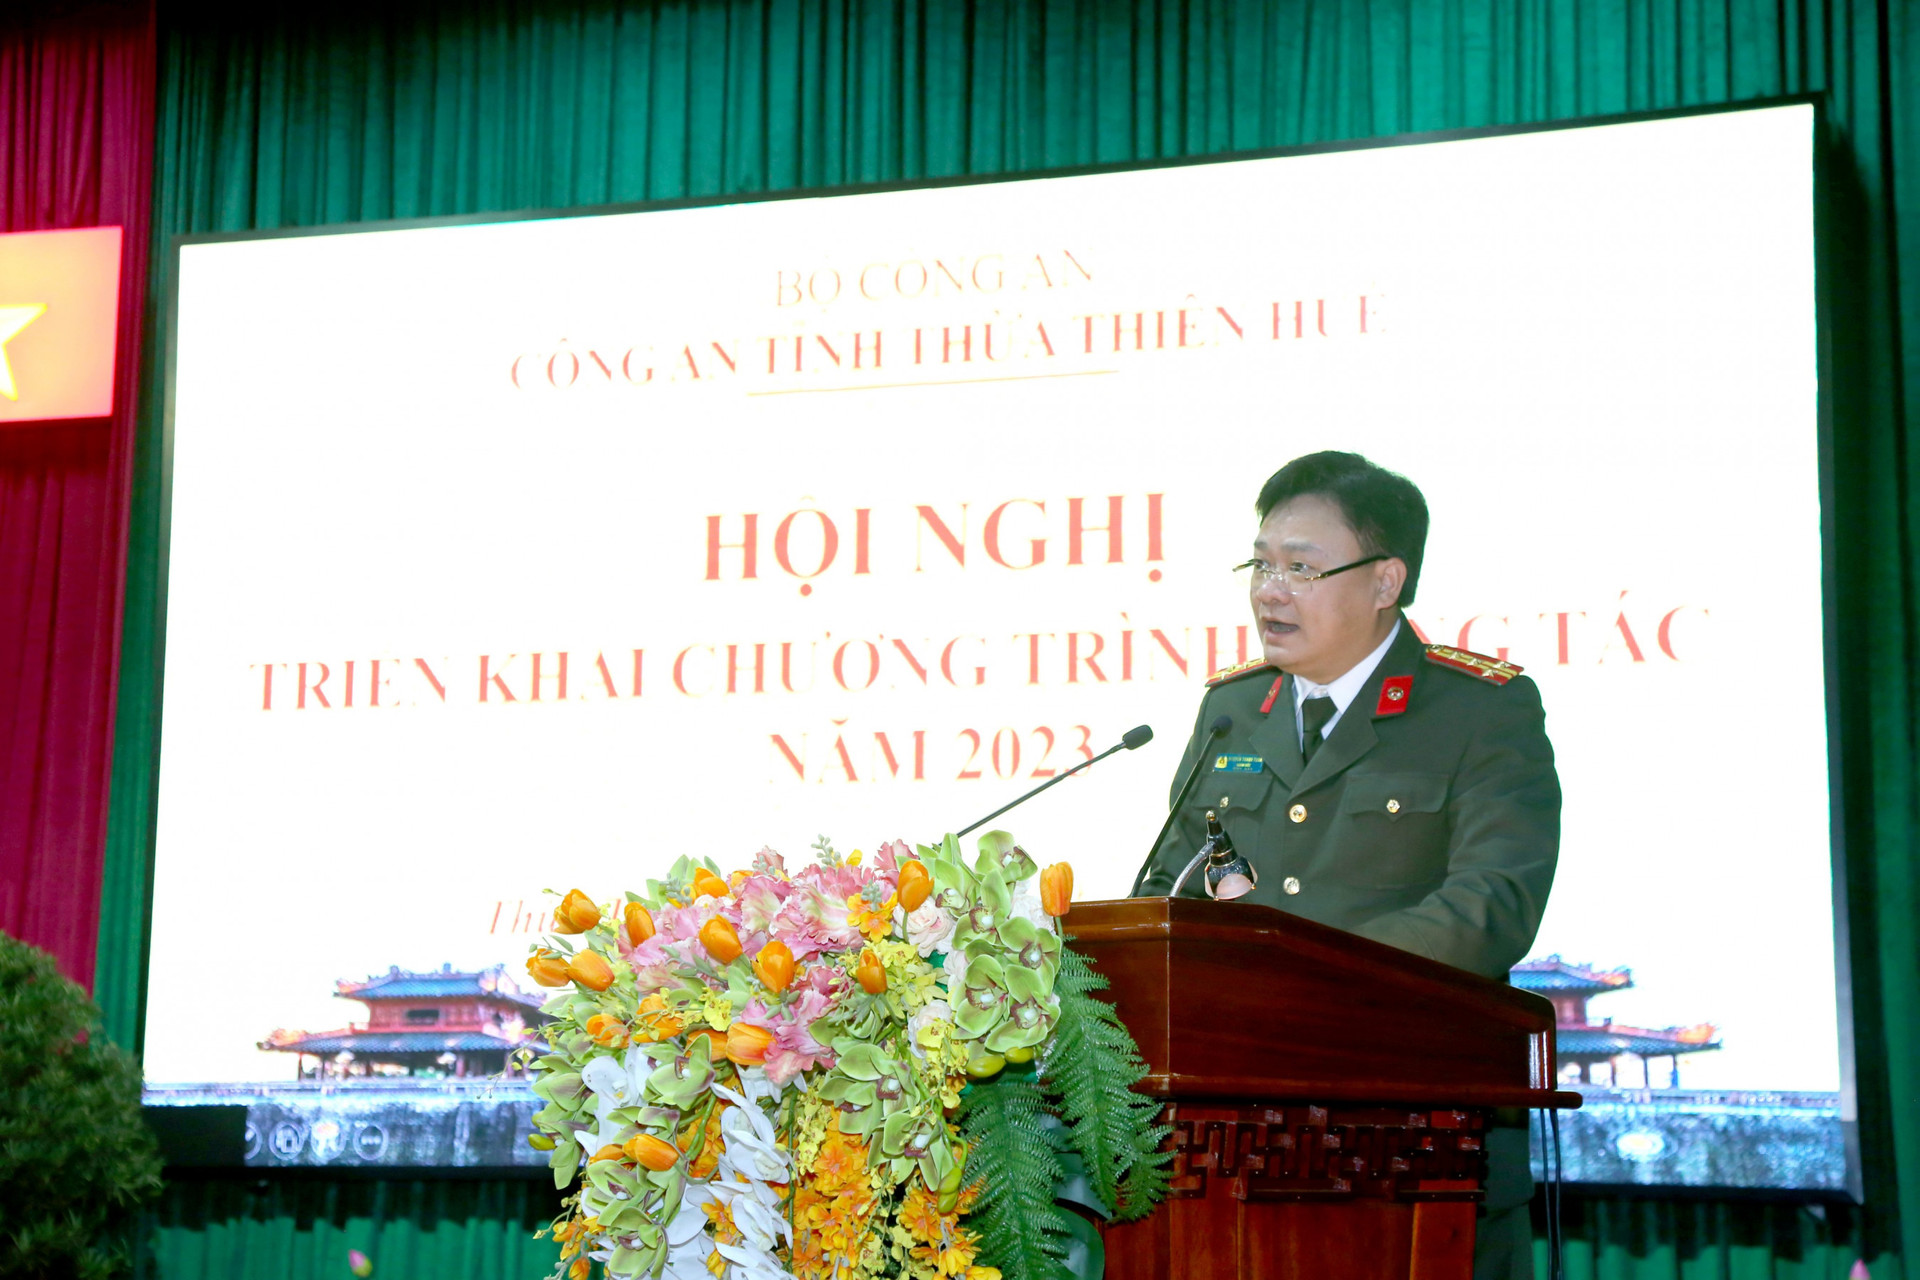 Đại tá Nguyễn Thanh Tuấn, Giám đốc Công an tỉnh Thừa Thiên Huế 